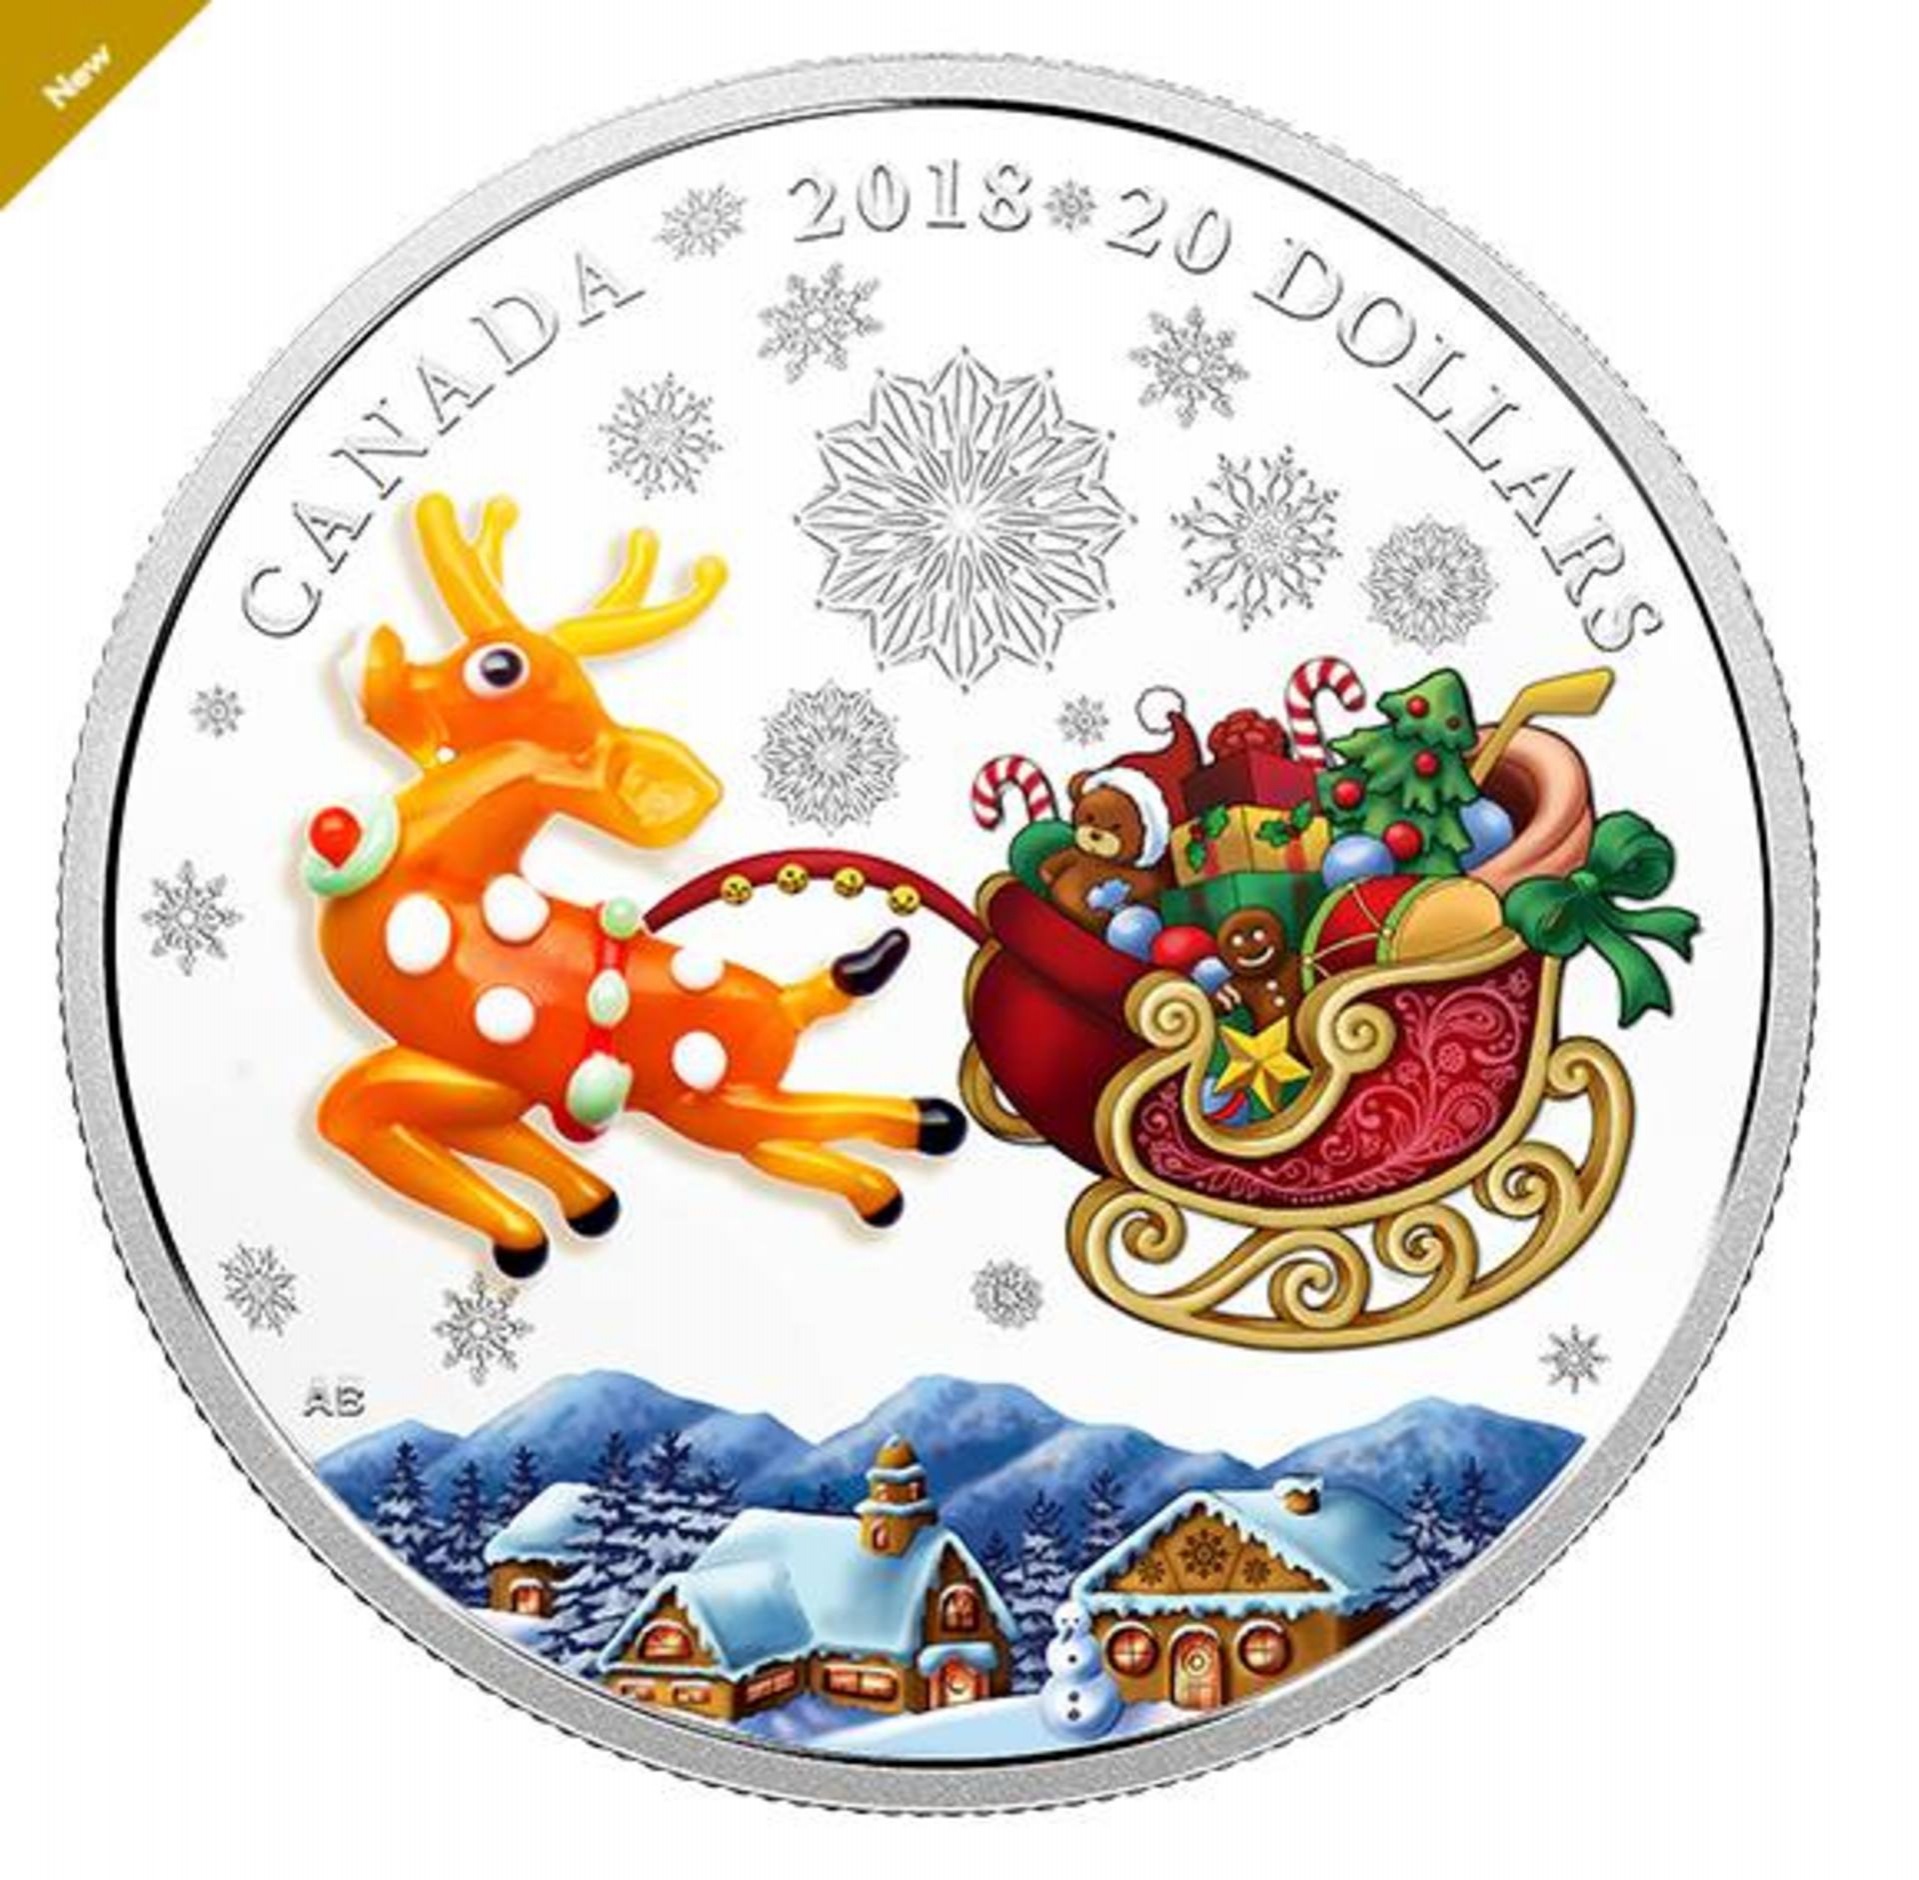 Срібний виріб є ексклюзивним, оскільки випущено лише 5000 екземплярів. Канадський монетний двір засвідчив, що всі монети є унікальними та колекційними.